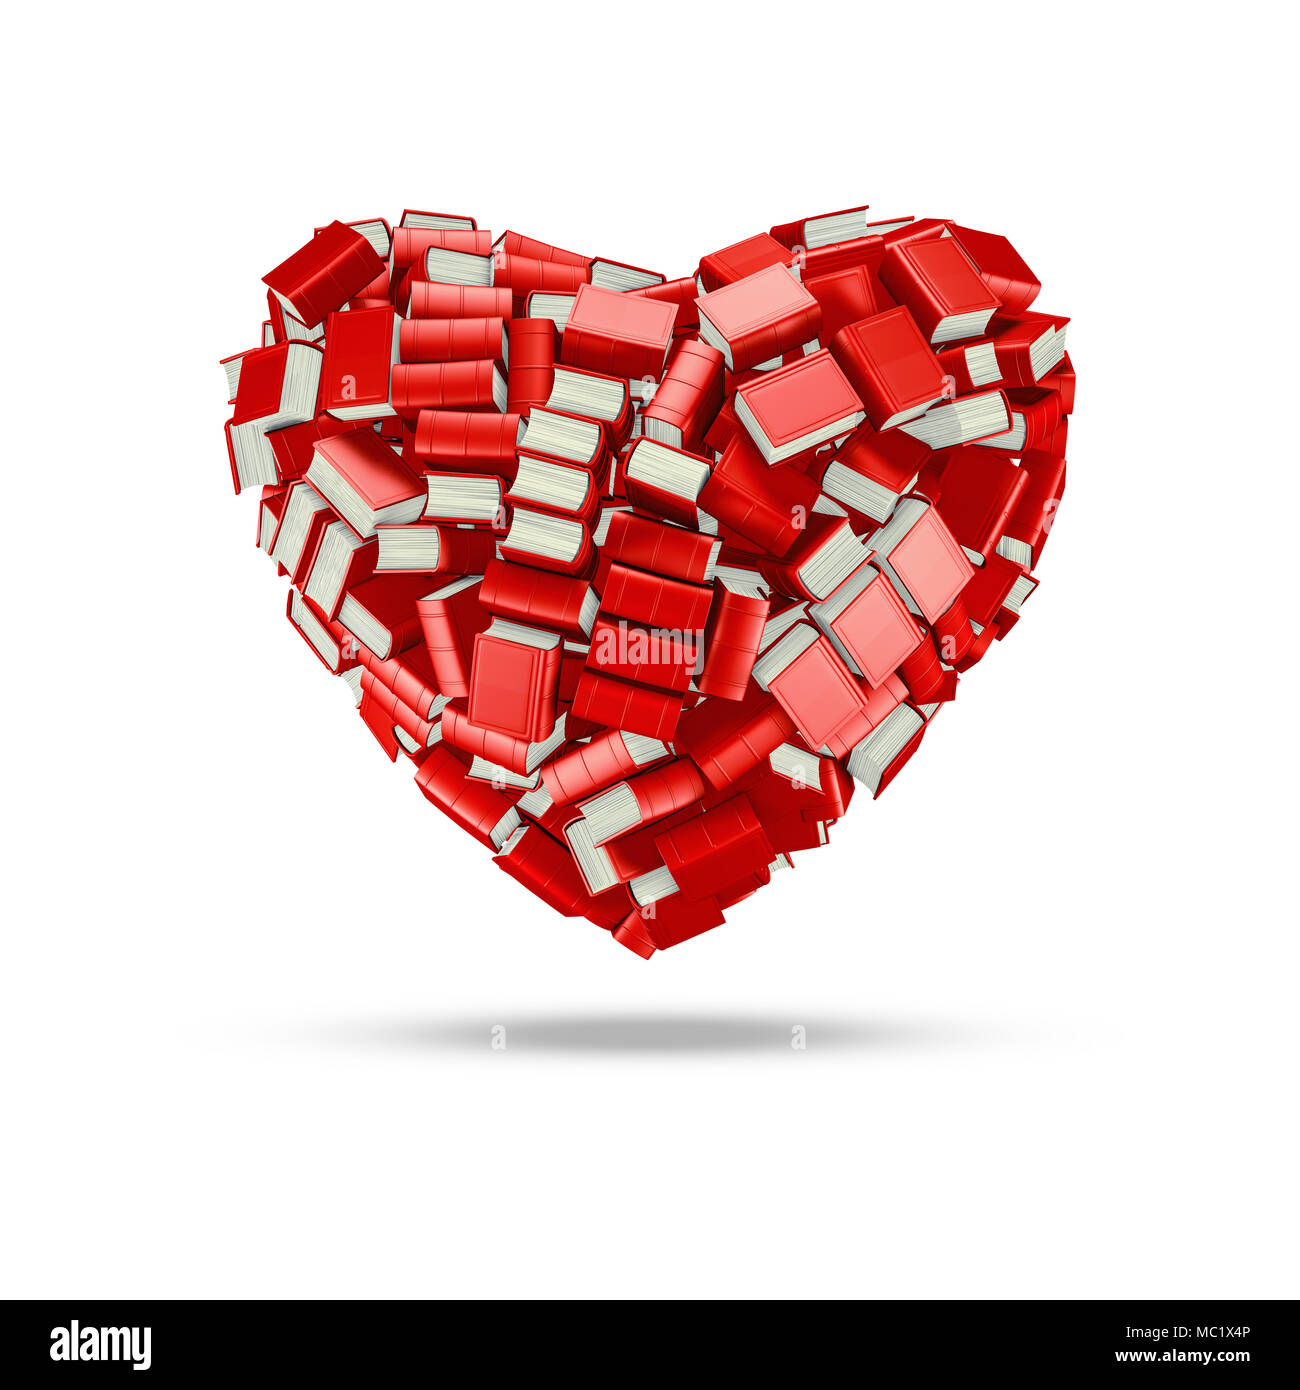 Le cœur livresque / 3D illustration de centaines de livres reliés épais formant les amateurs de coeur Banque D'Images